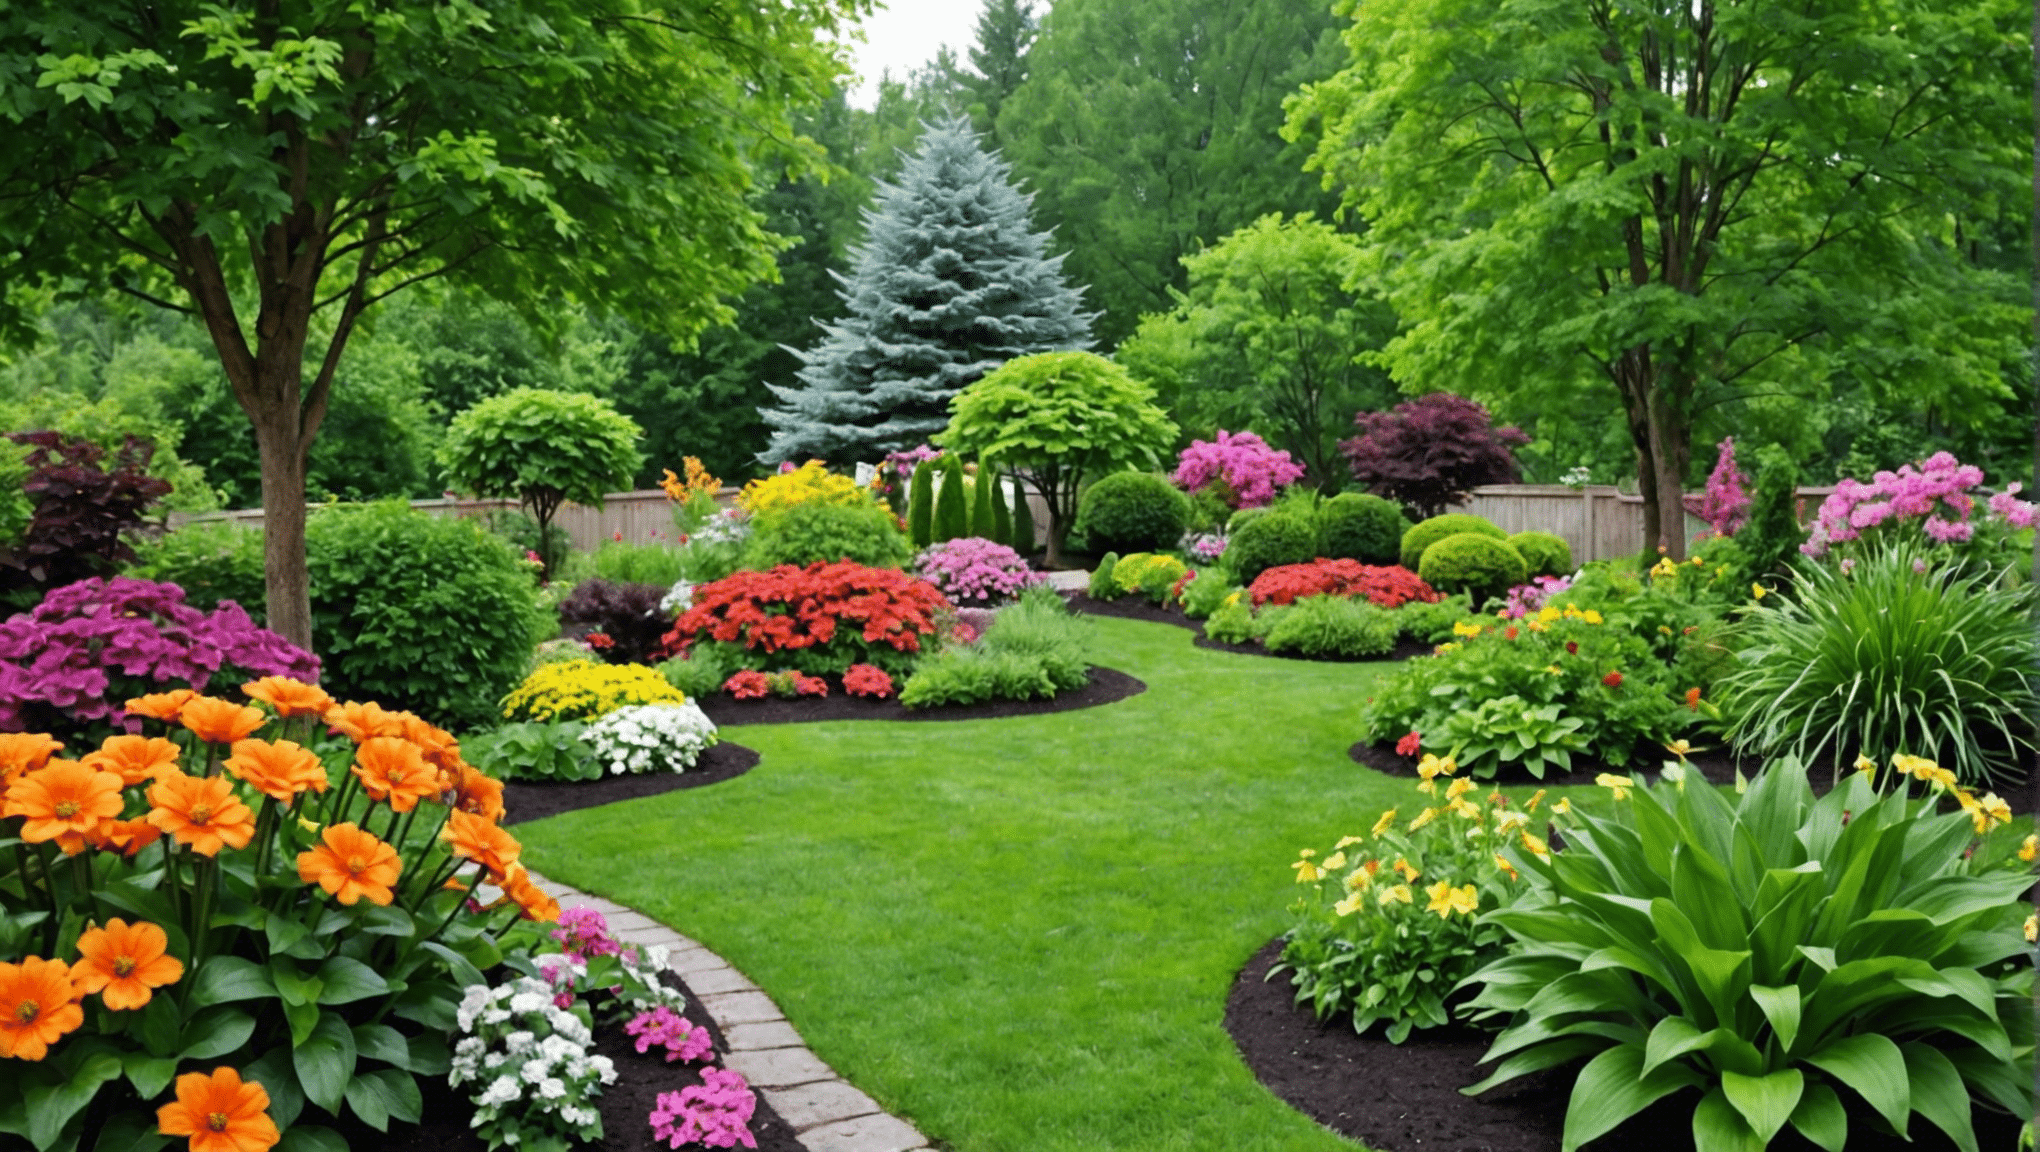 ontdek een grote verscheidenheid aan hoogwaardige tuinzaden voor uw epische tuin. breng uw tuin tot leven met onze eersteklas zadencollectie.